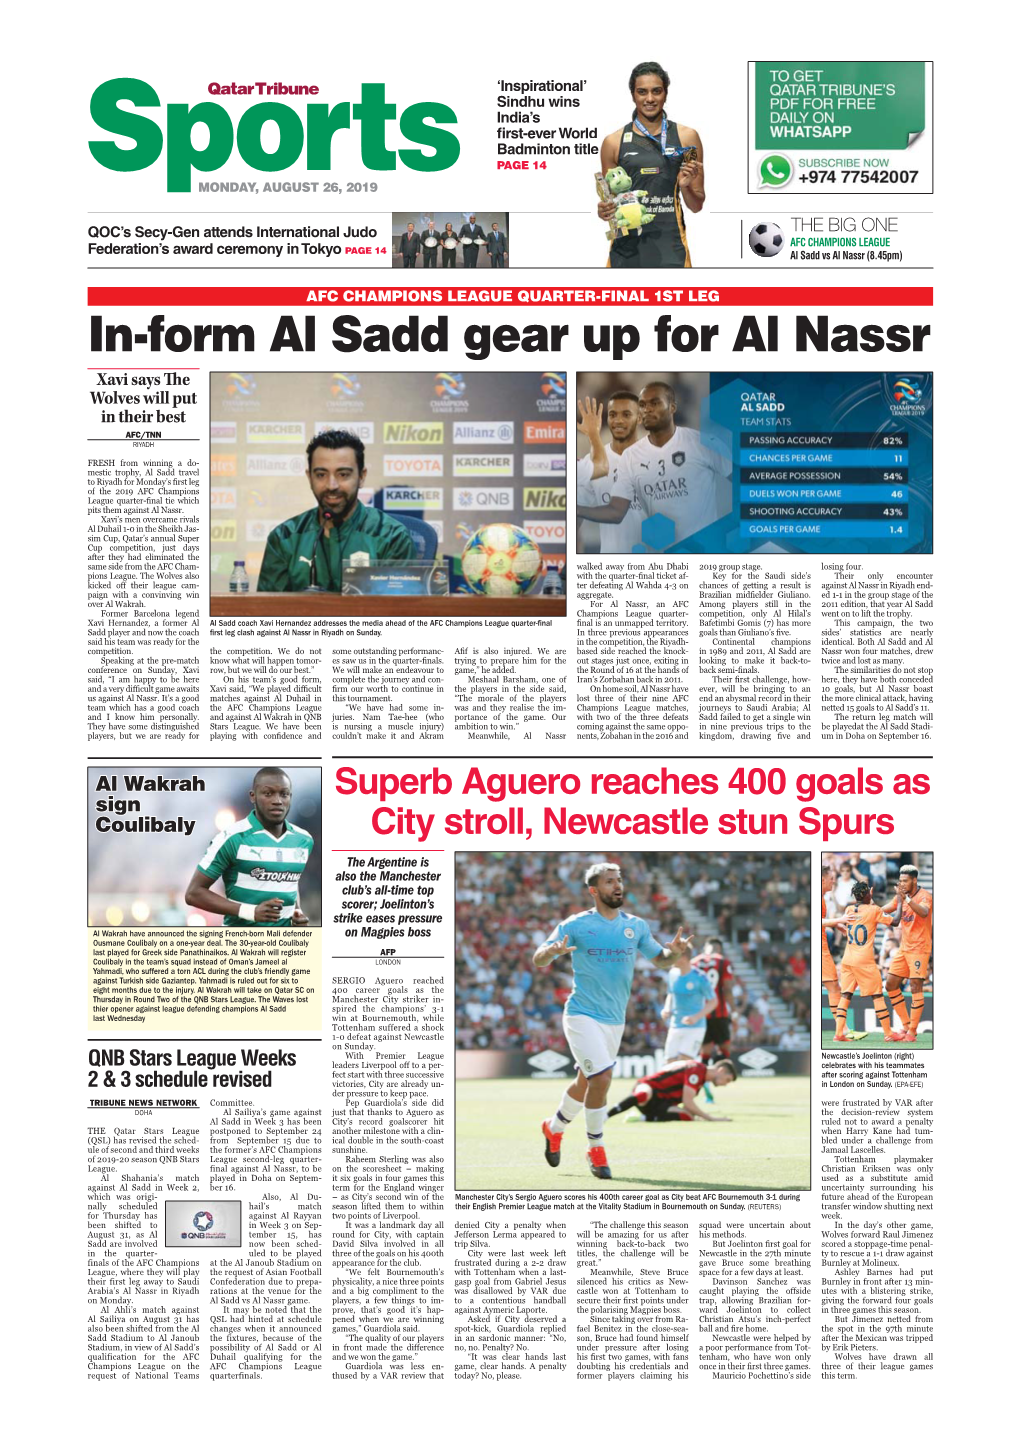 In-Form Al Sadd Gear up for Al Nassr Xavi Says the Wolves Will Put in Their Best AFC/TNN RIYADH